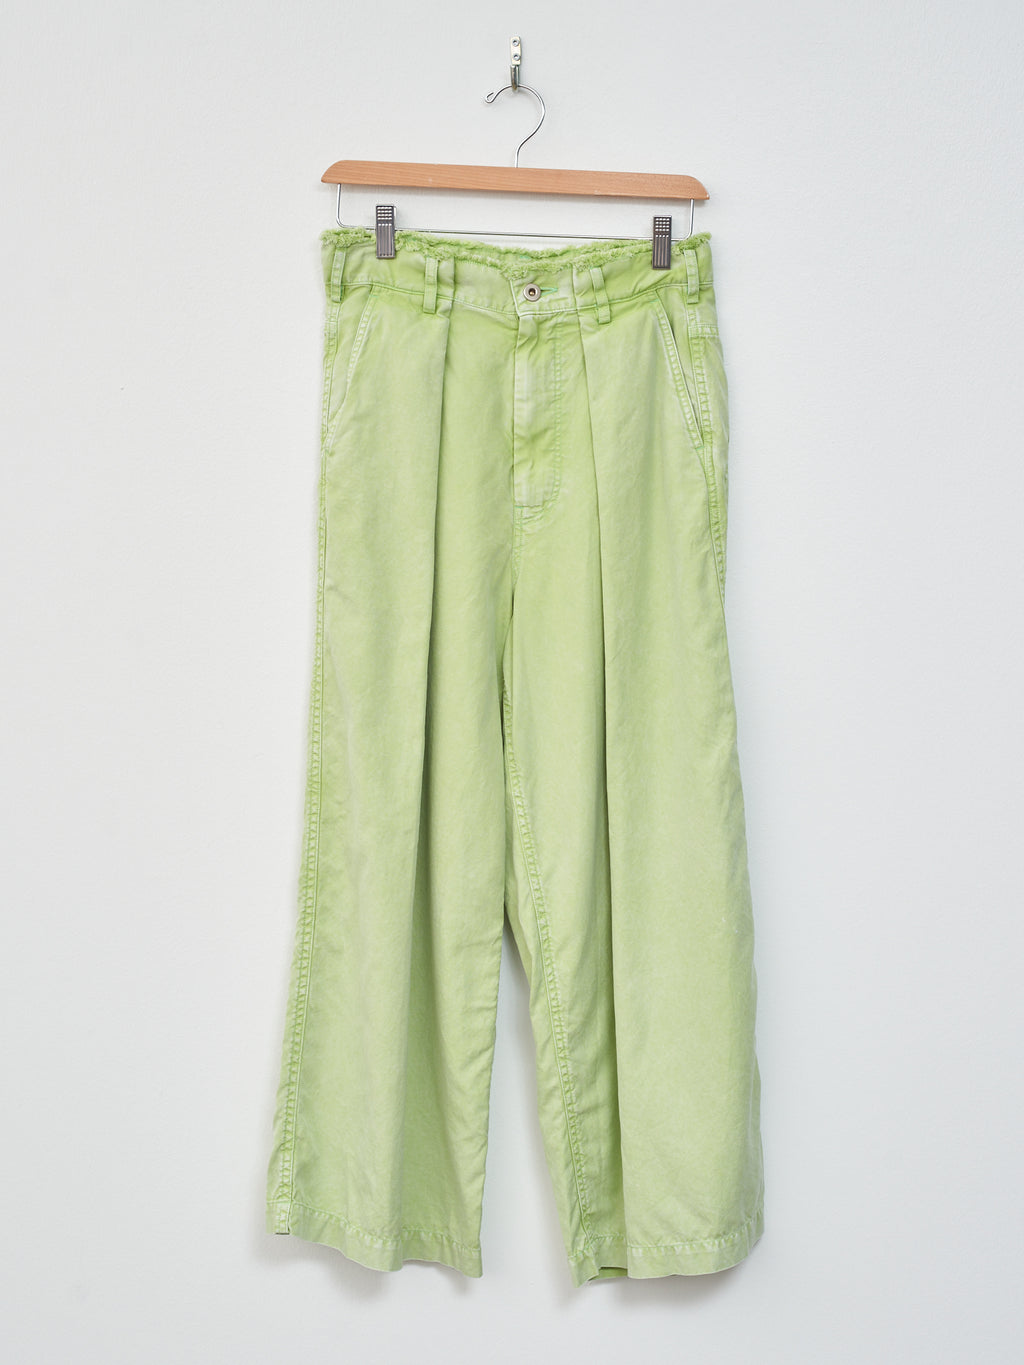 Namu Shop - Unfil Egyptian Cotton Wide Leg Pants - Washed Green